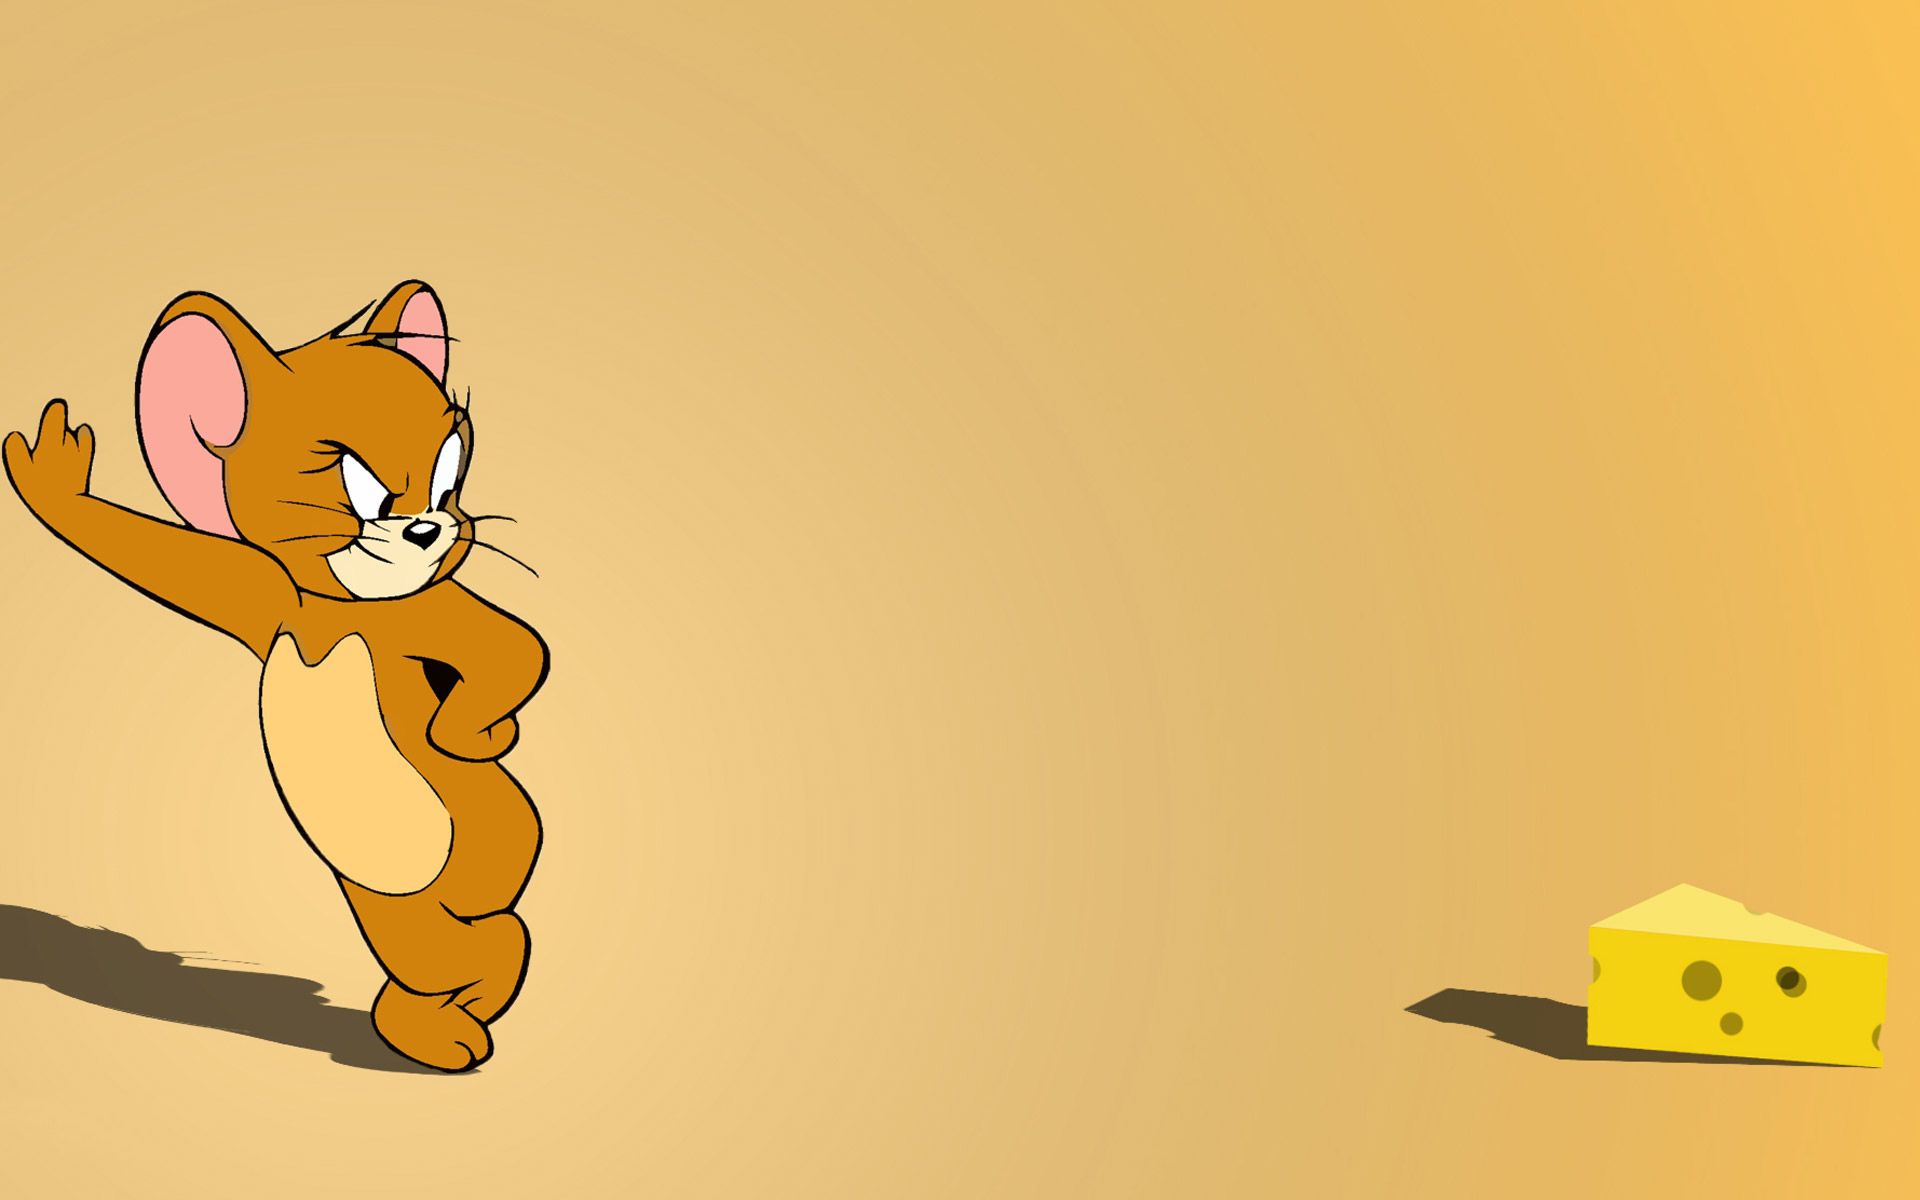 Tom và Jerry luôn là cặp đôi hoạt hình được yêu thích và nhận được sự quan tâm rất cao từ cộng đồng yêu hoạt hình. Wallpaper Cave sẽ giúp bạn có thêm những tấm hình nền kinh điển và đầy hài hước với hình ảnh của bộ đôi tài năng này.